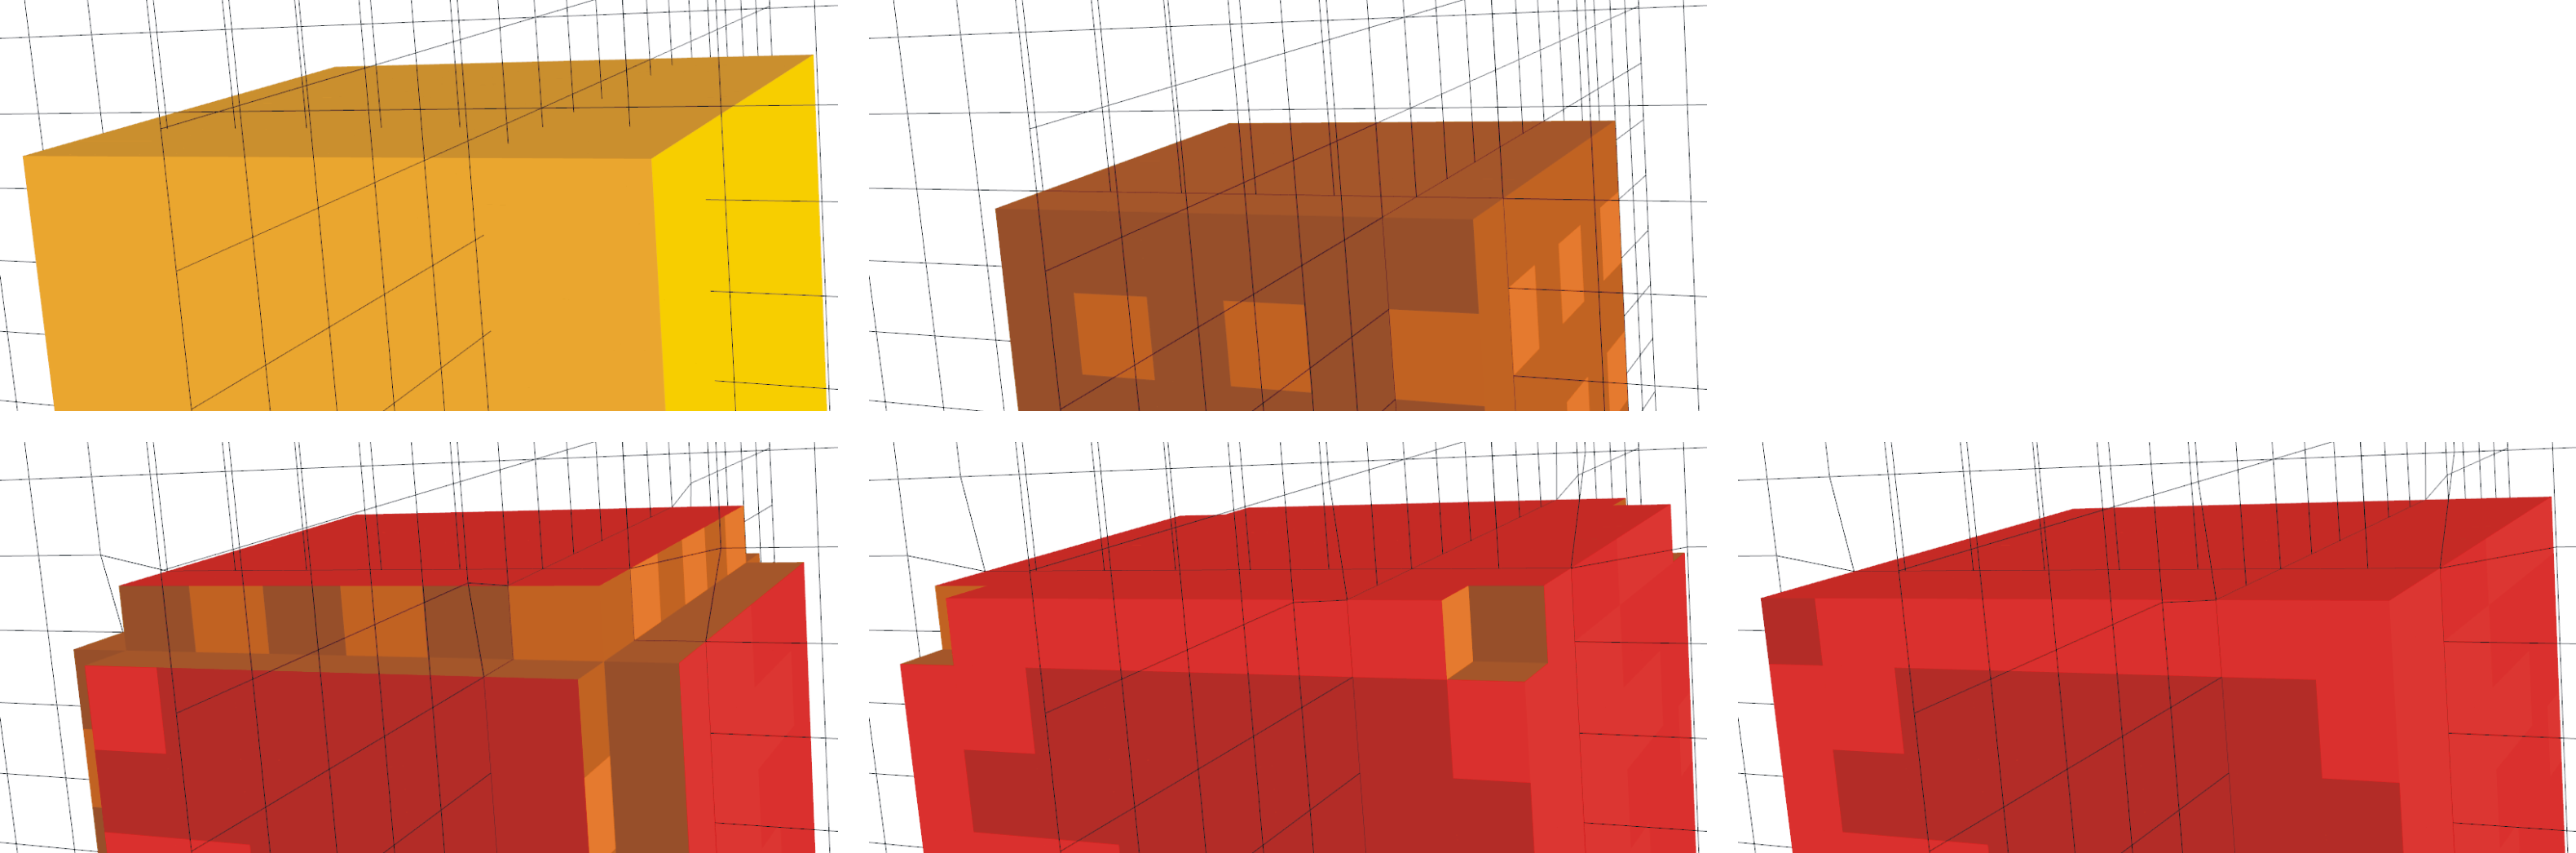 74 7. Resultate Abbildung 7.14: Validierung der Projektionstechniken am Beispiel des Würfels und einem regulär unterteilten Gitter.